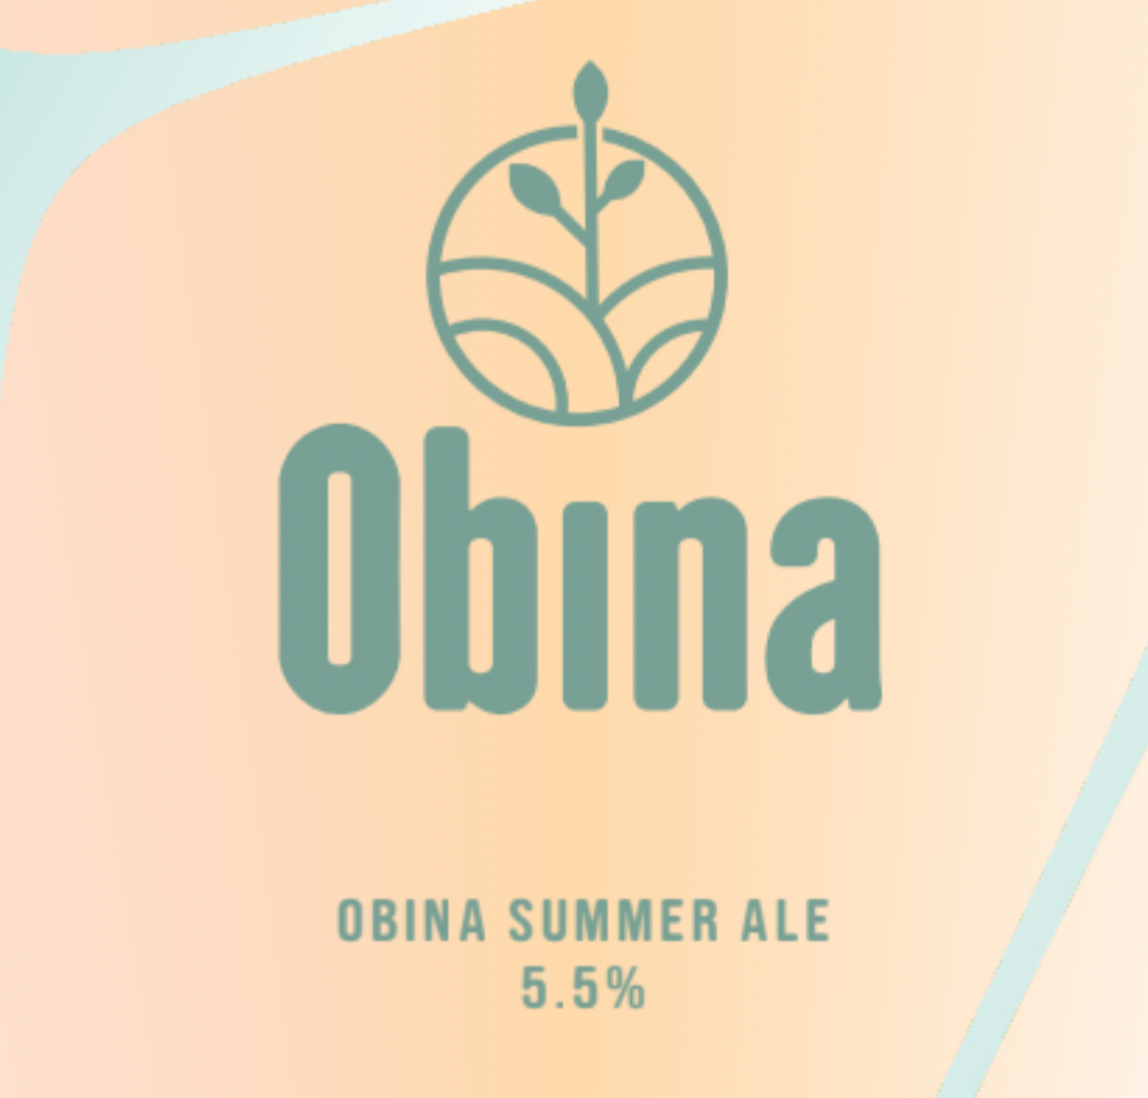 Obina Summer Ale